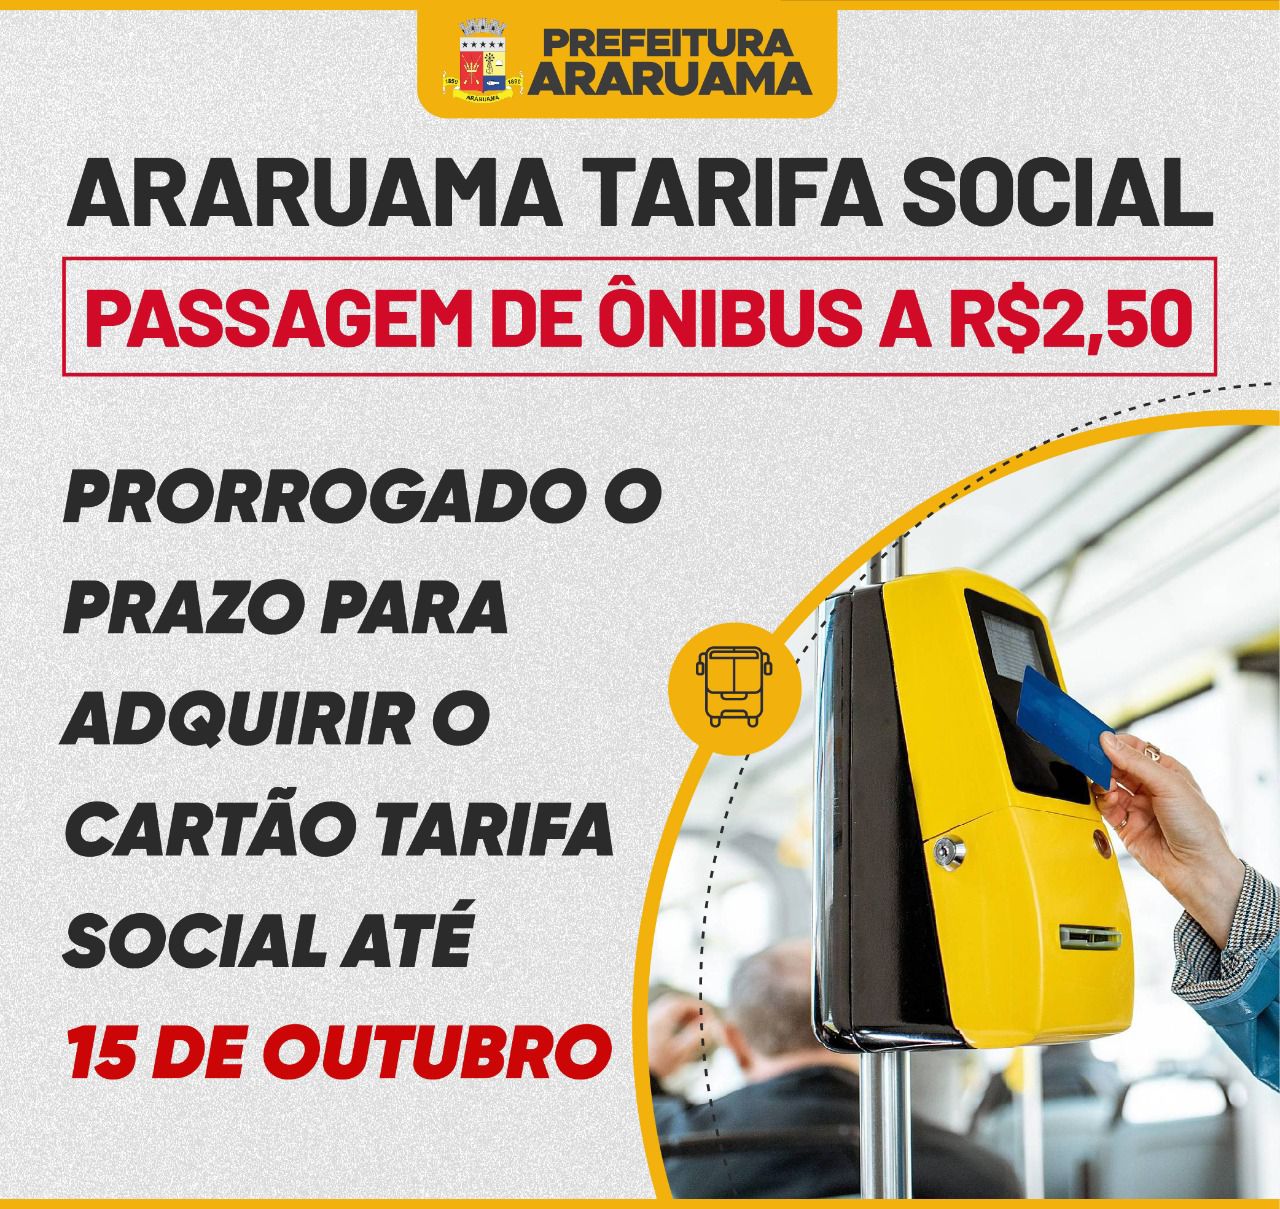 Prefeitura prorroga o prazo para morador adquirir o cartão “Araruama Tarifa Social”, com passagem de ônibus a R$2,50